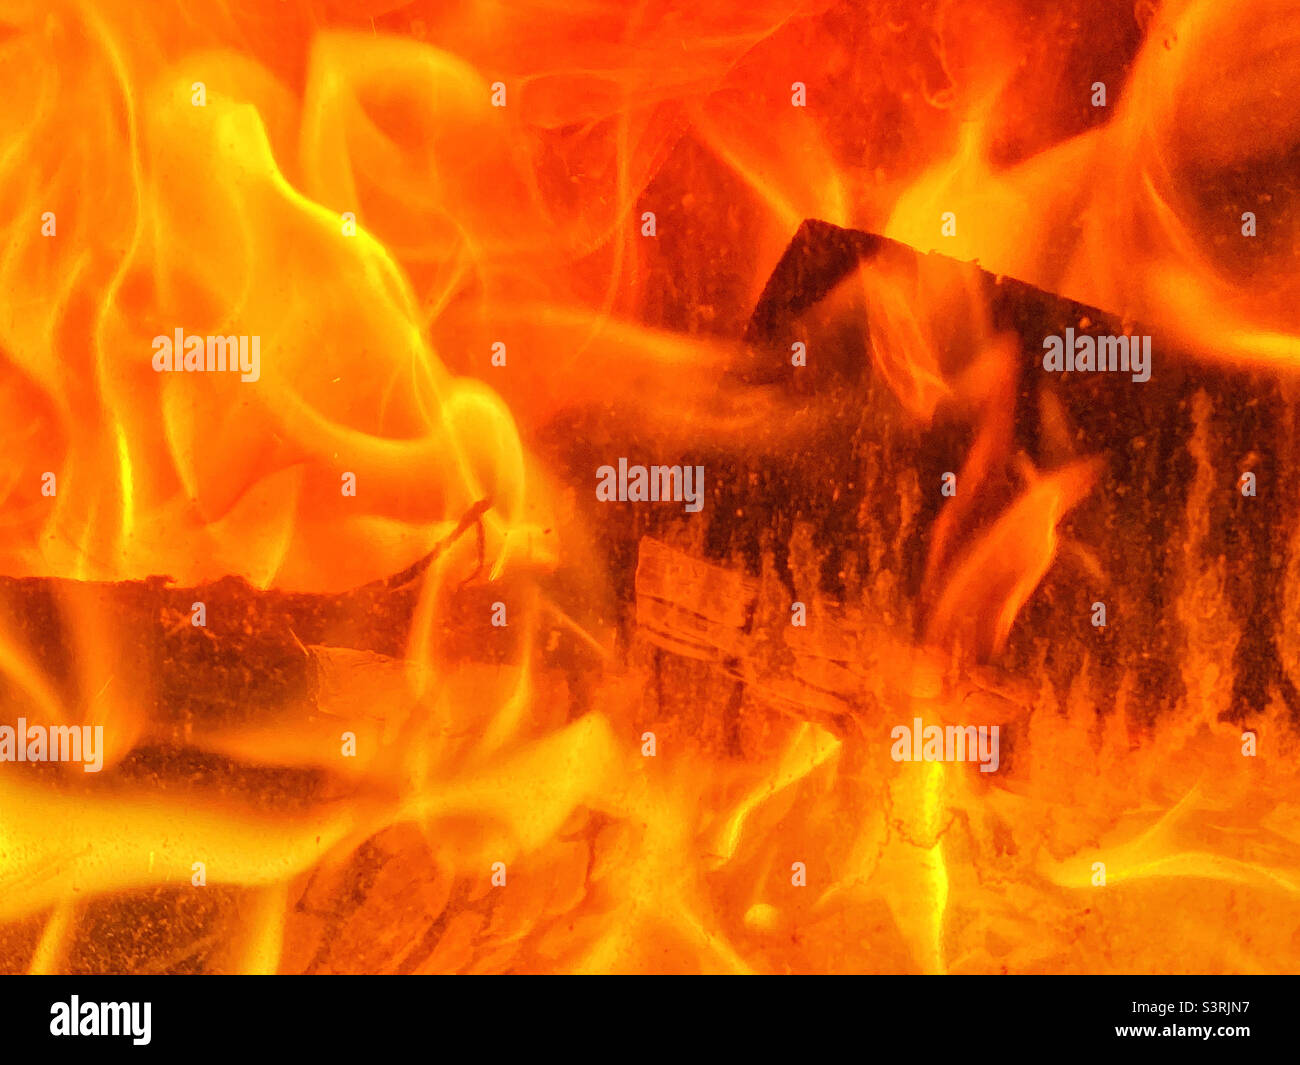 Feuer! Flammen verbrauchen ein paar Holzblöcke. Einige Leute denken, dass dieses Bild heiß ist. Foto ©️ COLIN HOSKINS. Stockfoto